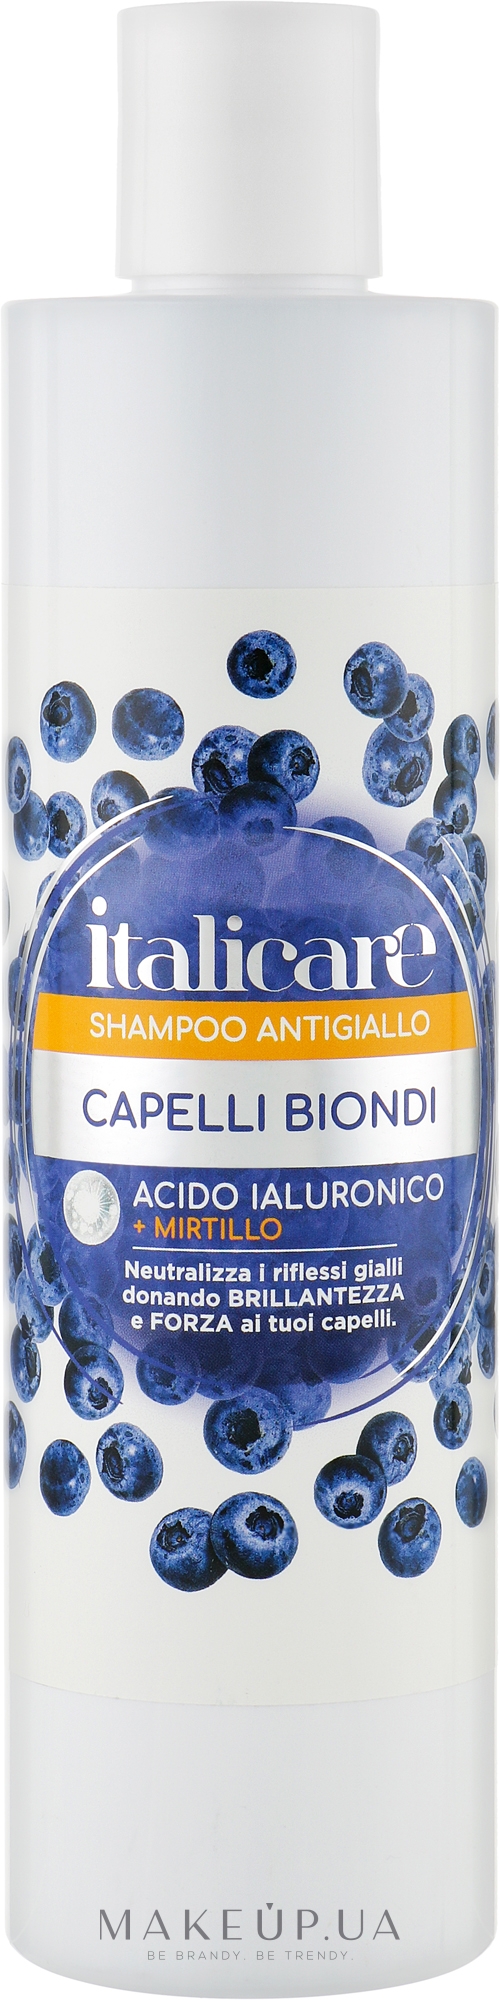 Шампунь для волос с антижелтым эффектом - Italicare Antiglallo Shampoo — фото 300ml